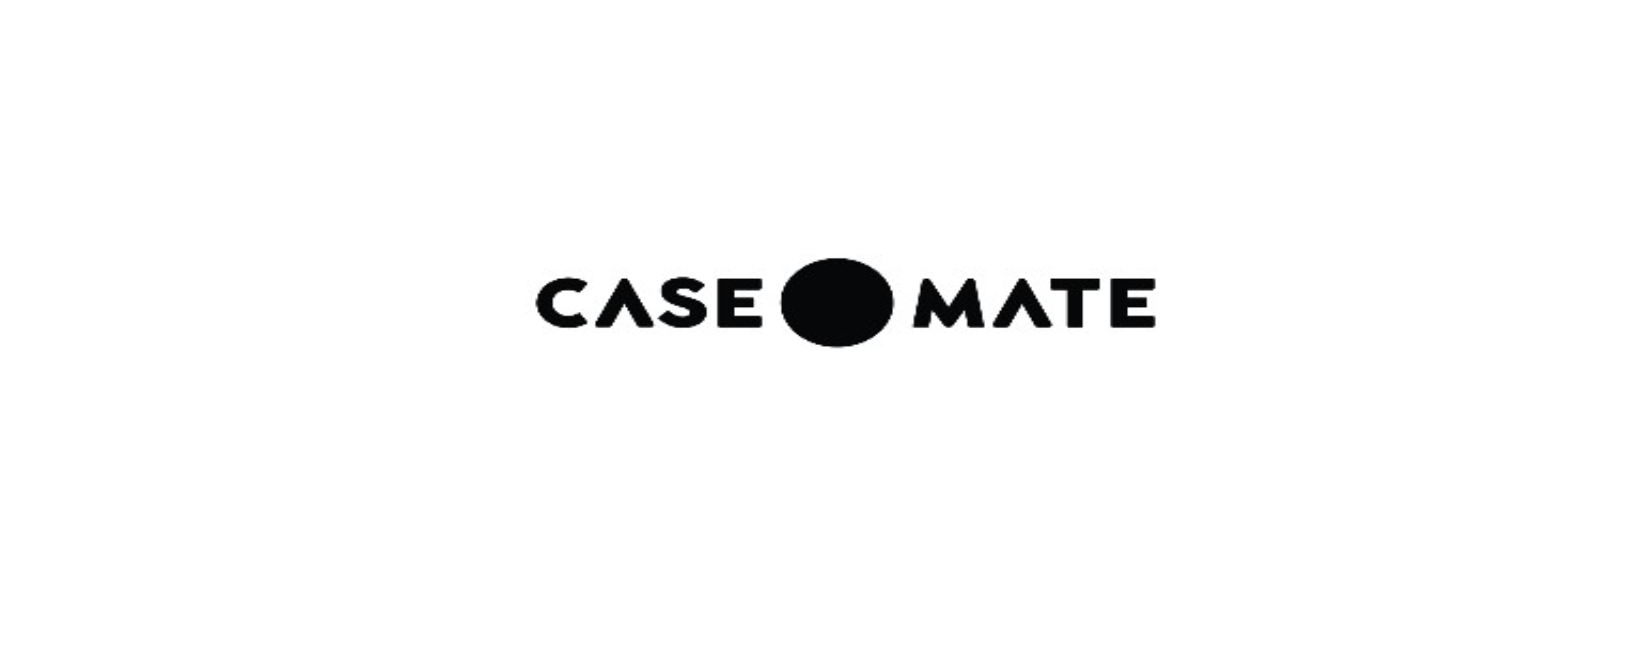 Case-Mate Discount Code 2022